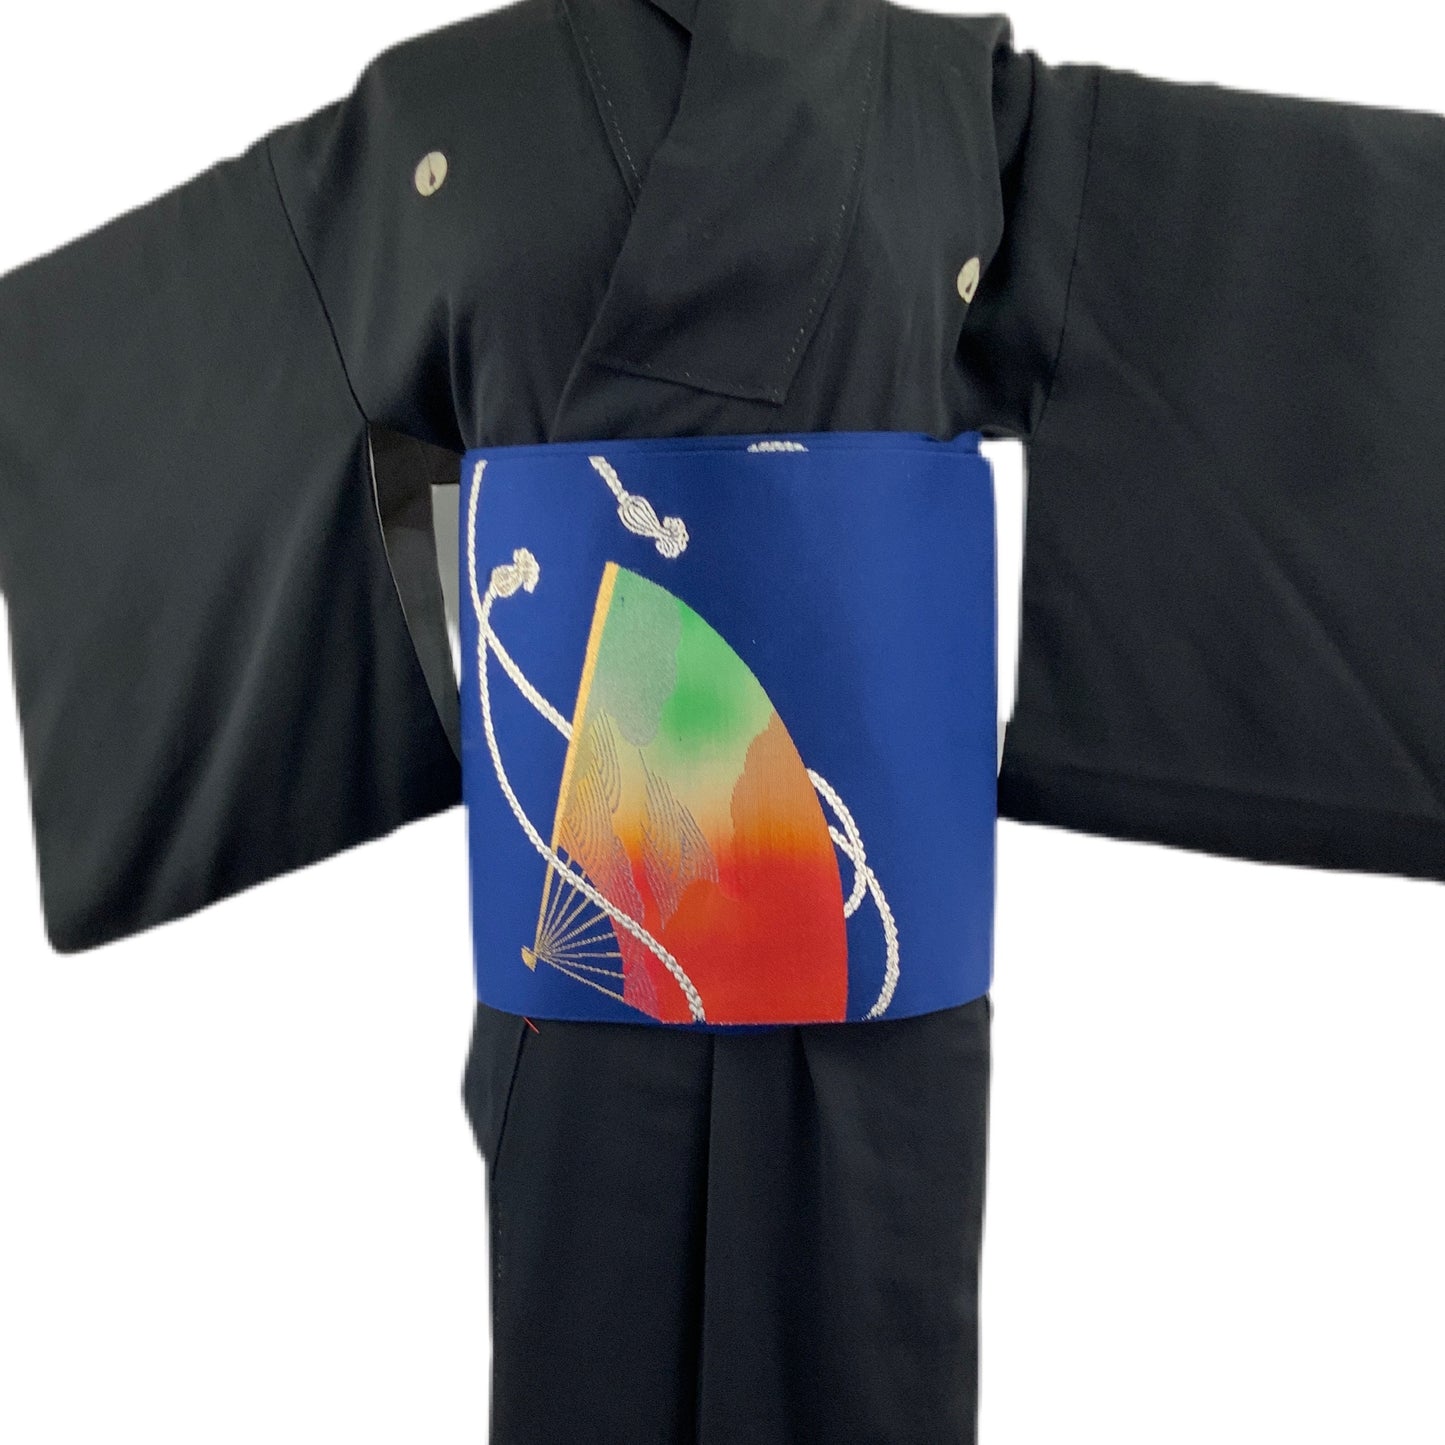 OBI Original mehrfarbiger japanischer Gürtel für Kimono 97